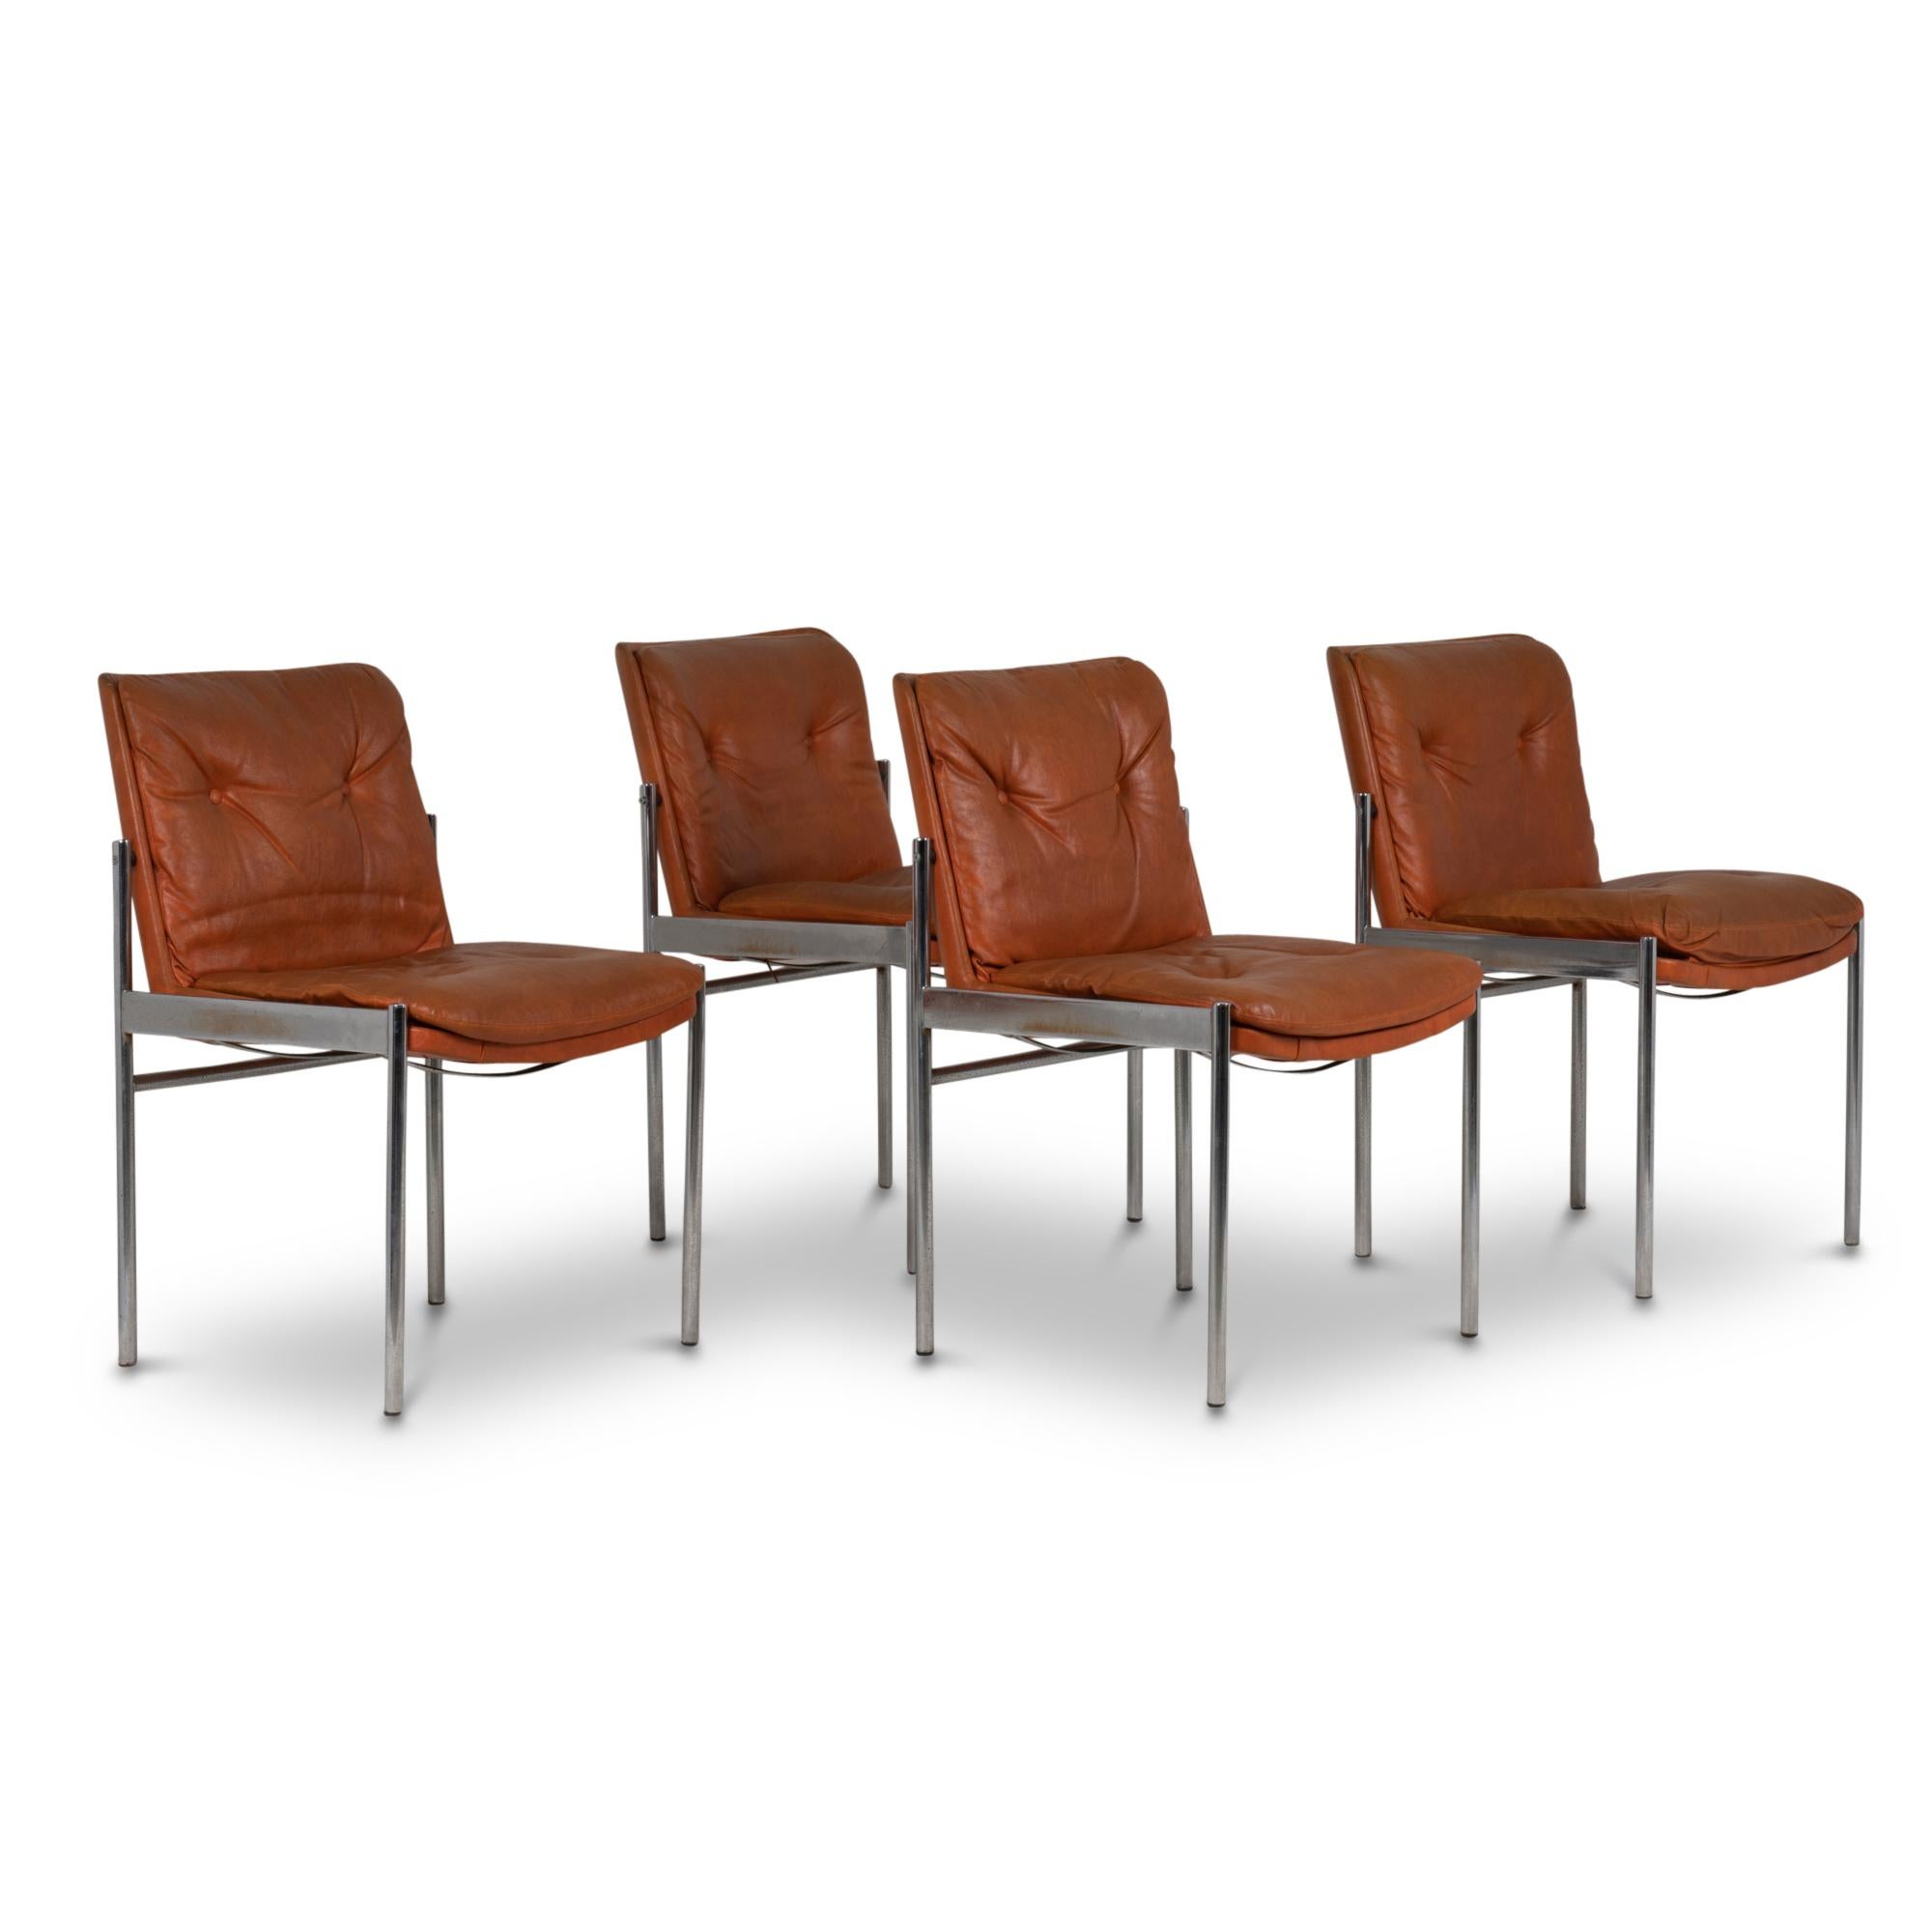 Série de douze chaises de forme rectangulaire. Assise et dossier en simili cuir couleur fauve. Base en métal chromé.

Œuvre italienne réalisée dans les années 1970.